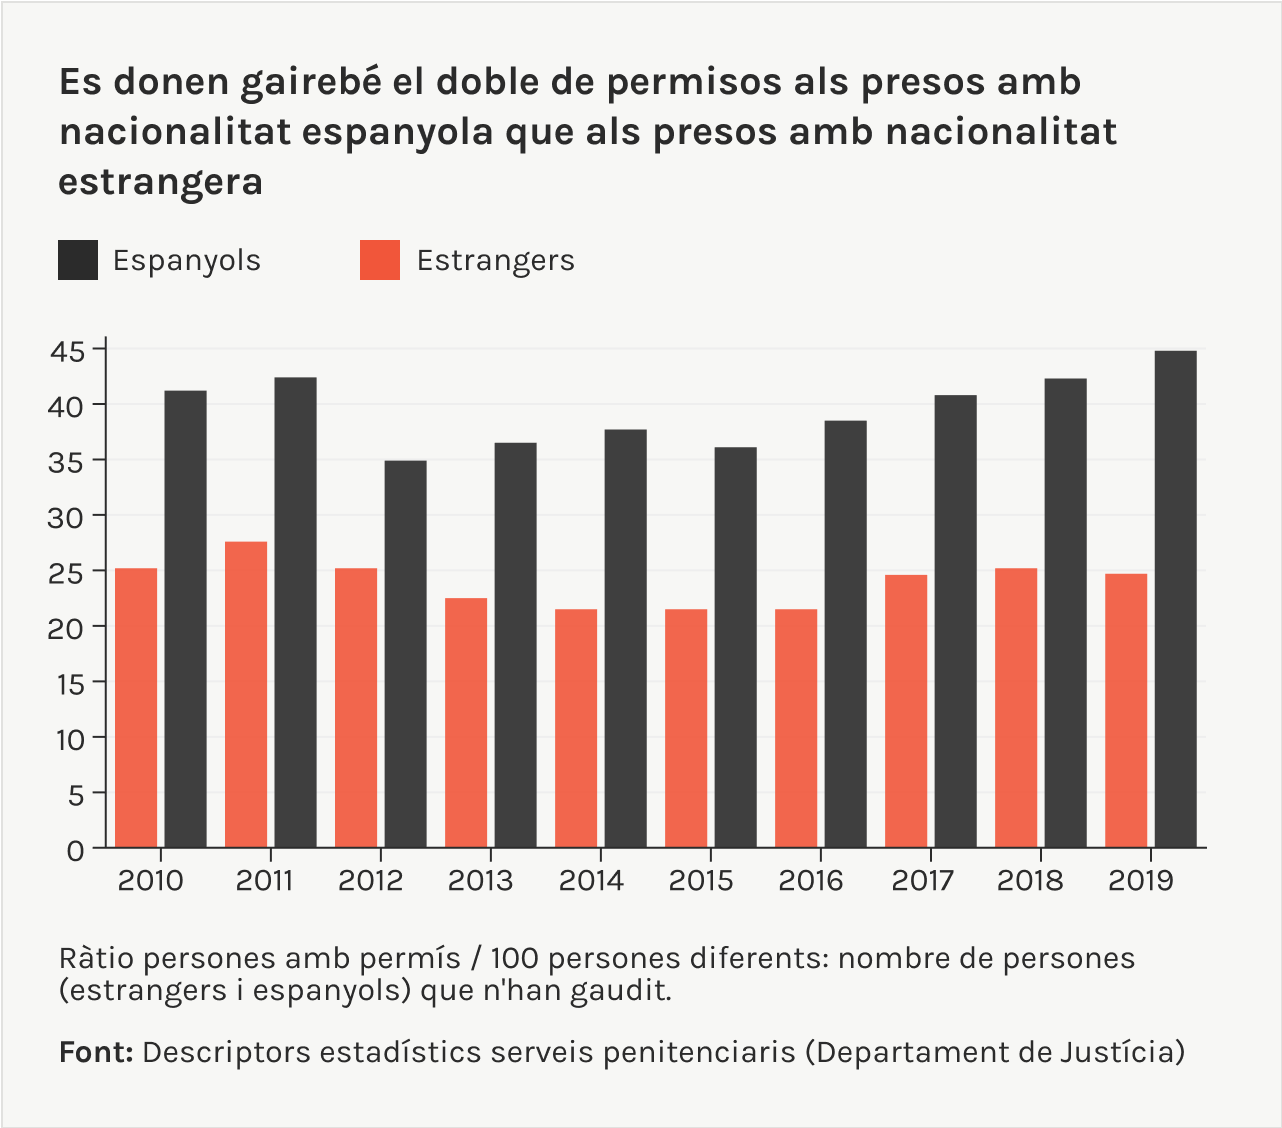 es donen gairebé el doble de permisos a espanyols que estrangers